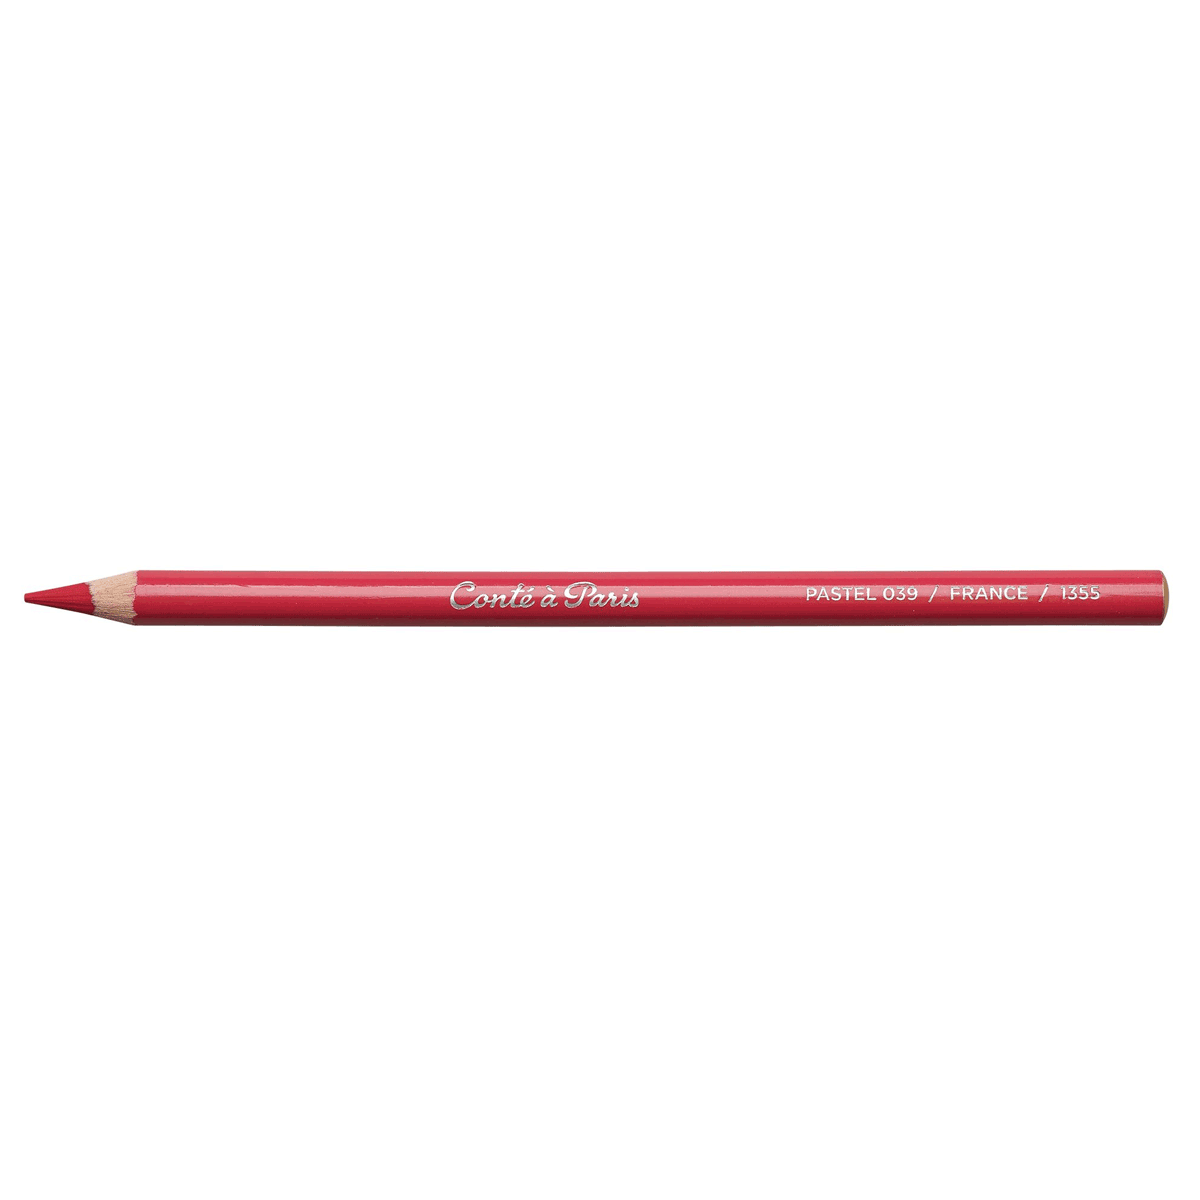 Conte Pastel Pencil - Garnet Red